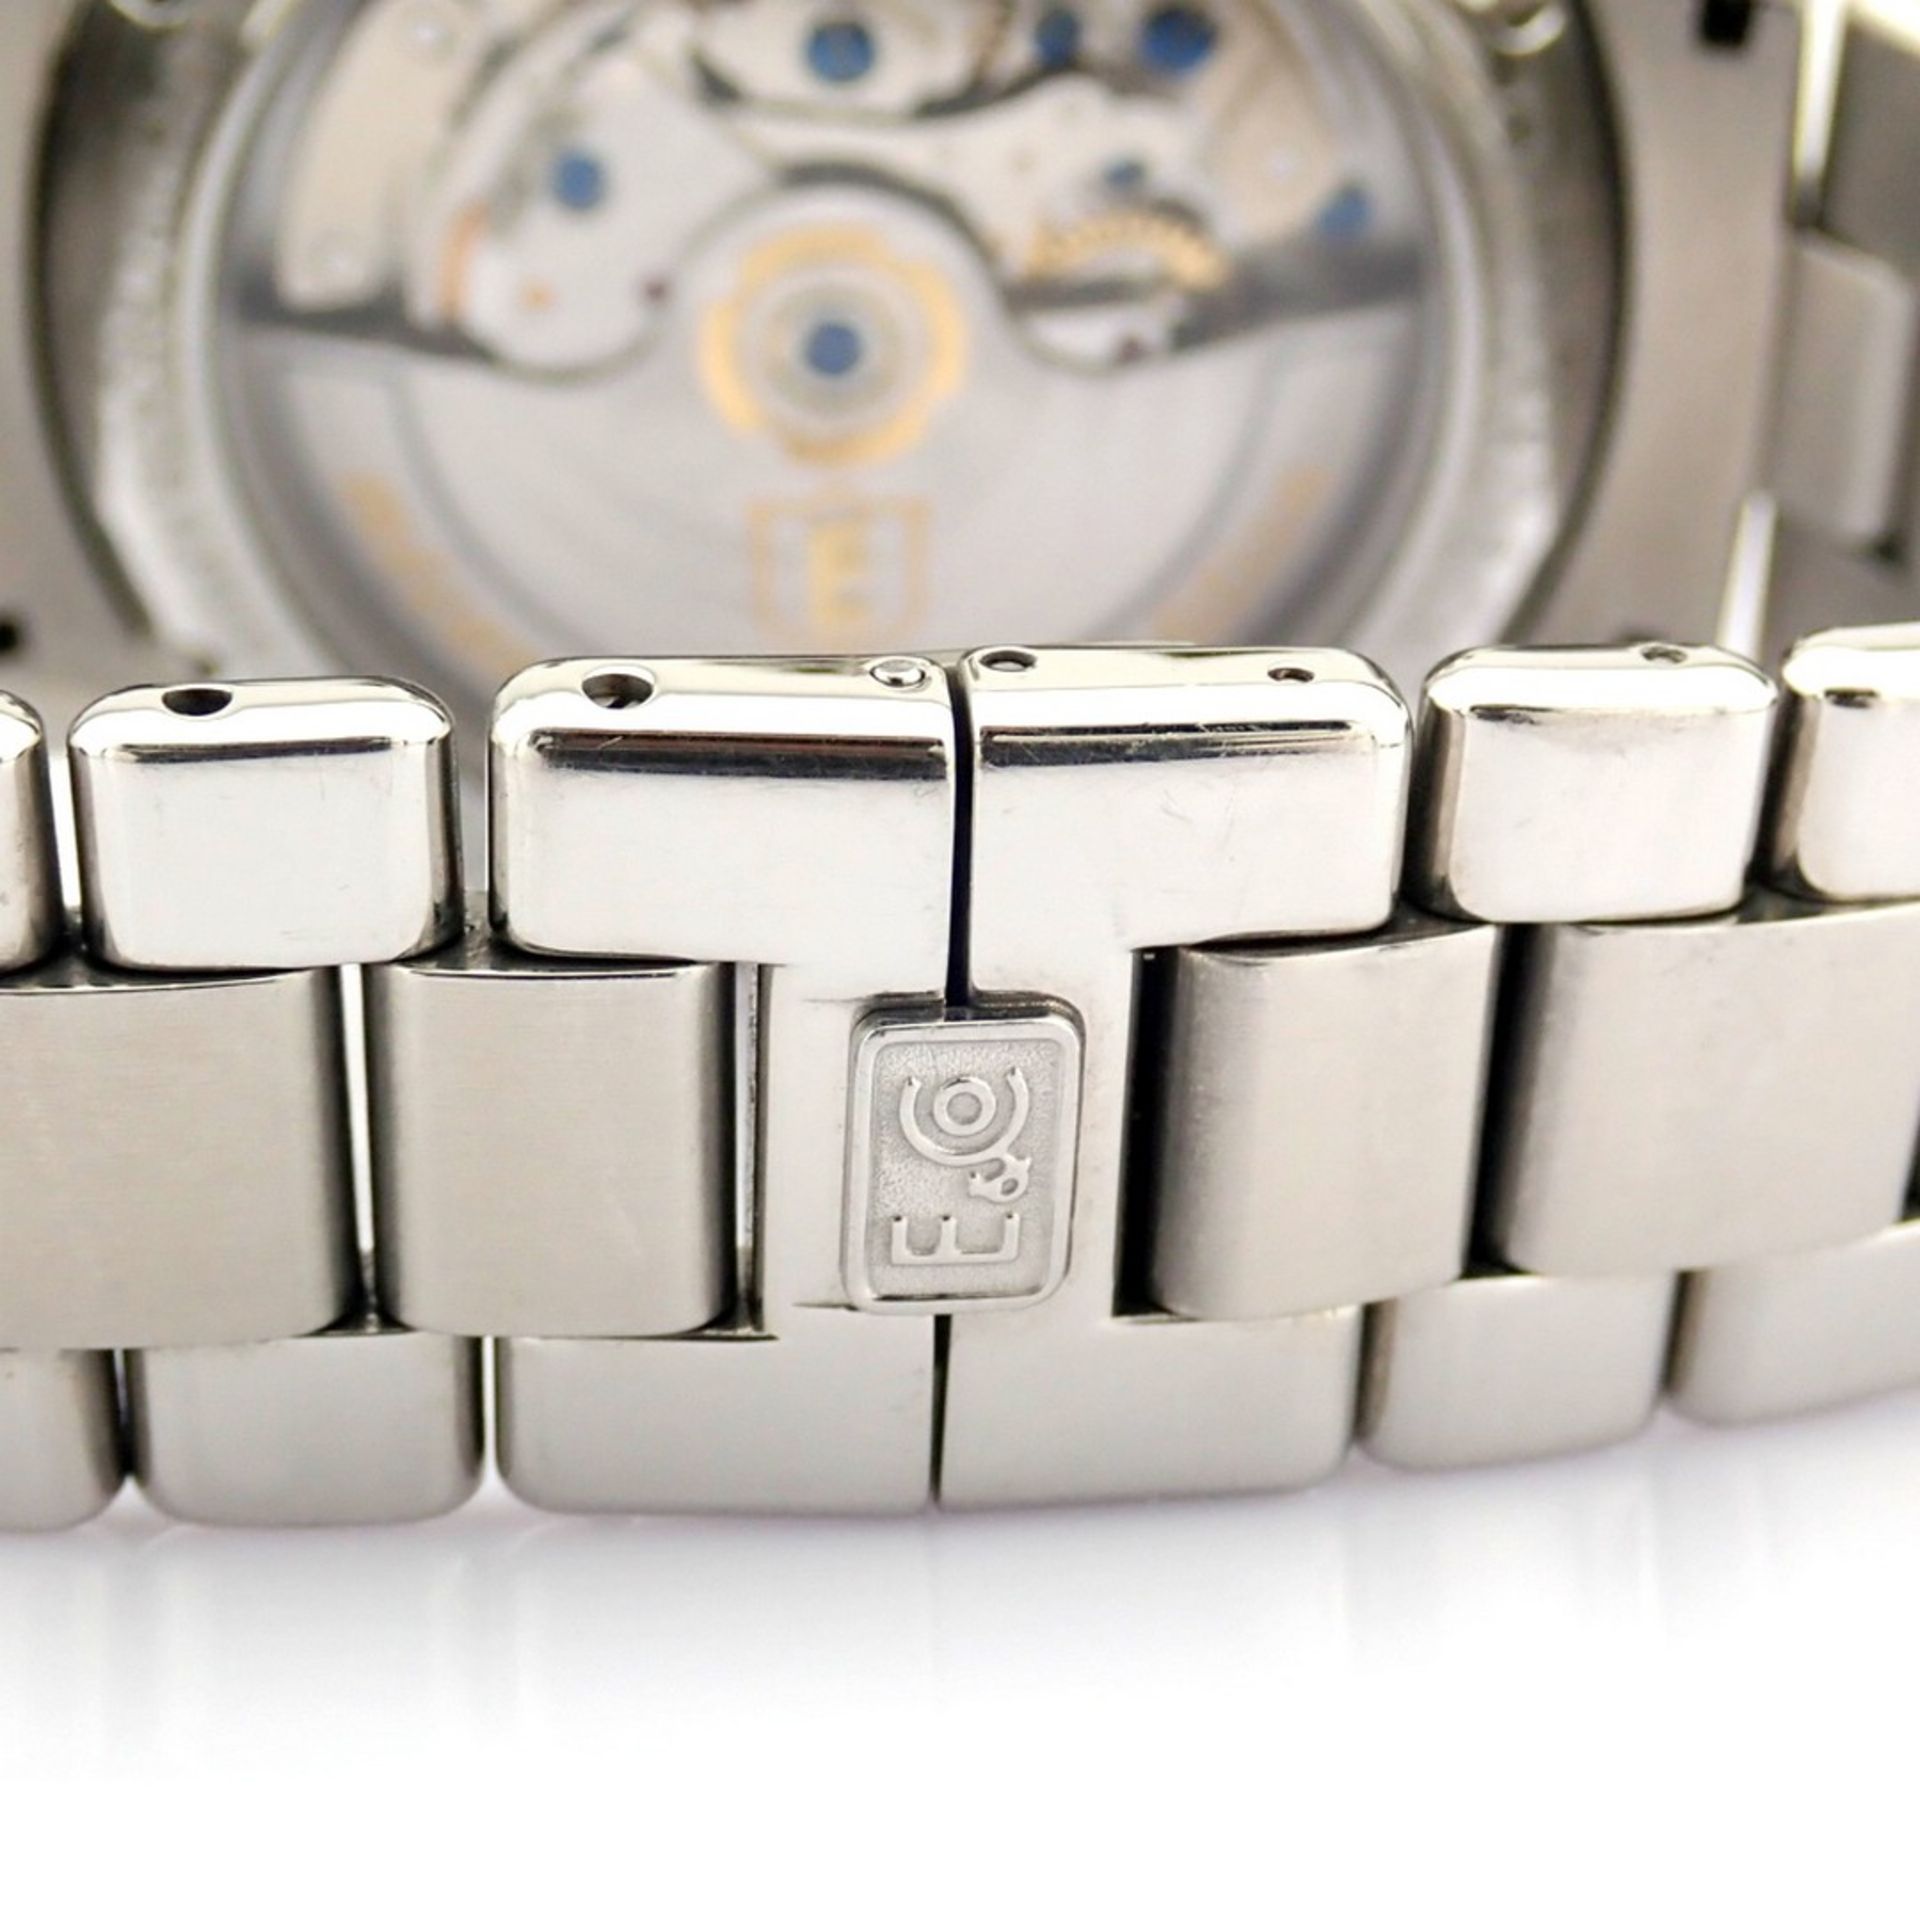 Eberhard & Co. / Traversetolo Chronograph Automatic - Gentlemen's Steel Wristwatch - Image 2 of 11